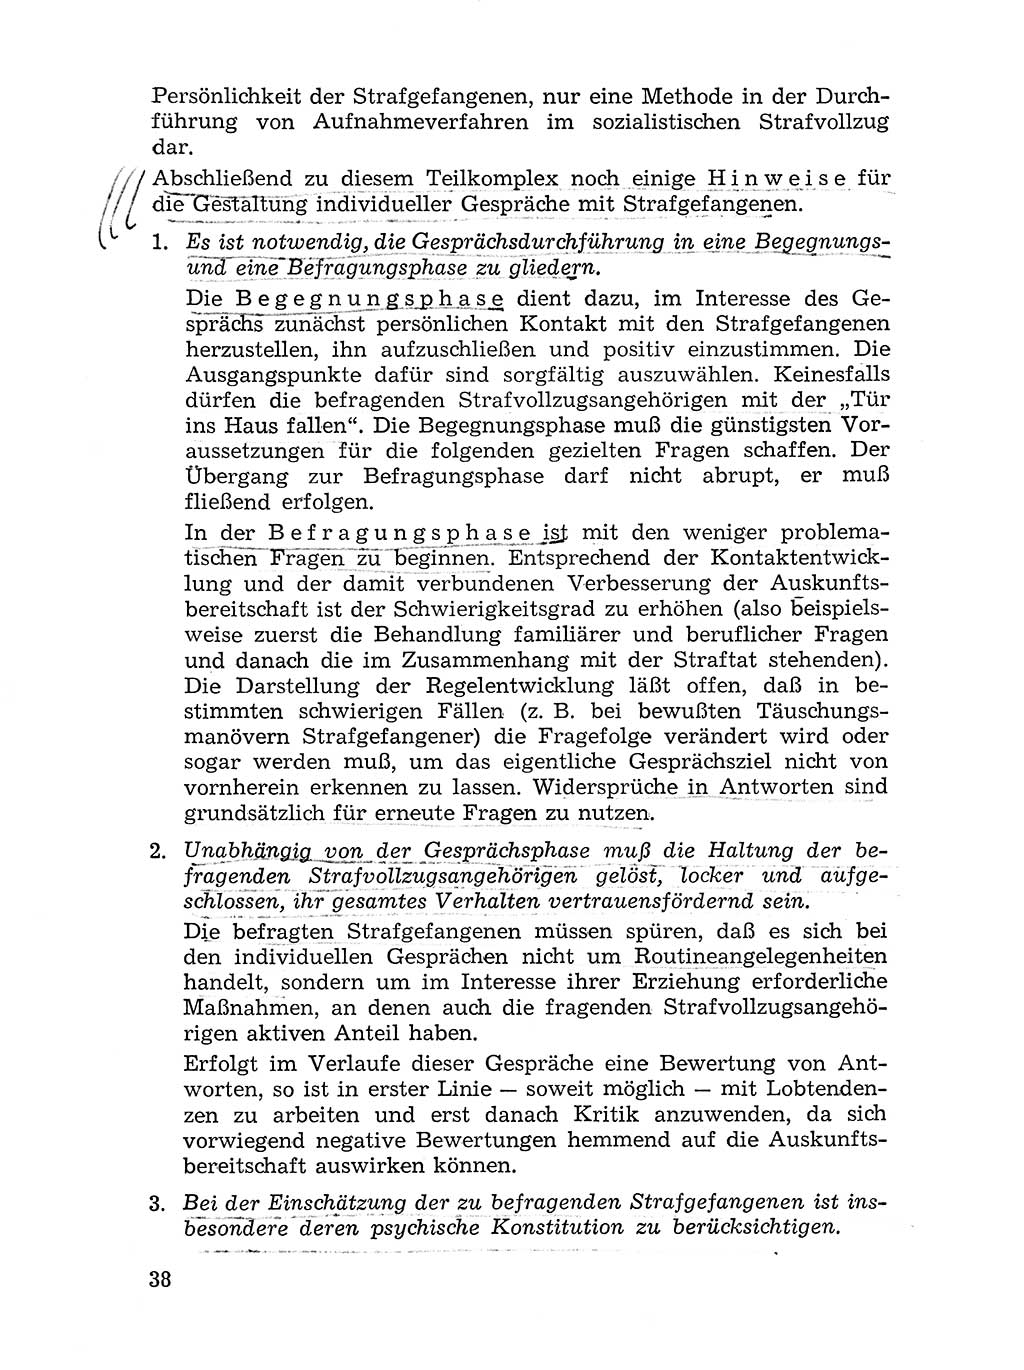 Sozialistischer Strafvollzug (SV) [Deutsche Demokratische Republik (DDR)] 1972, Seite 38 (Soz. SV DDR 1972, S. 38)